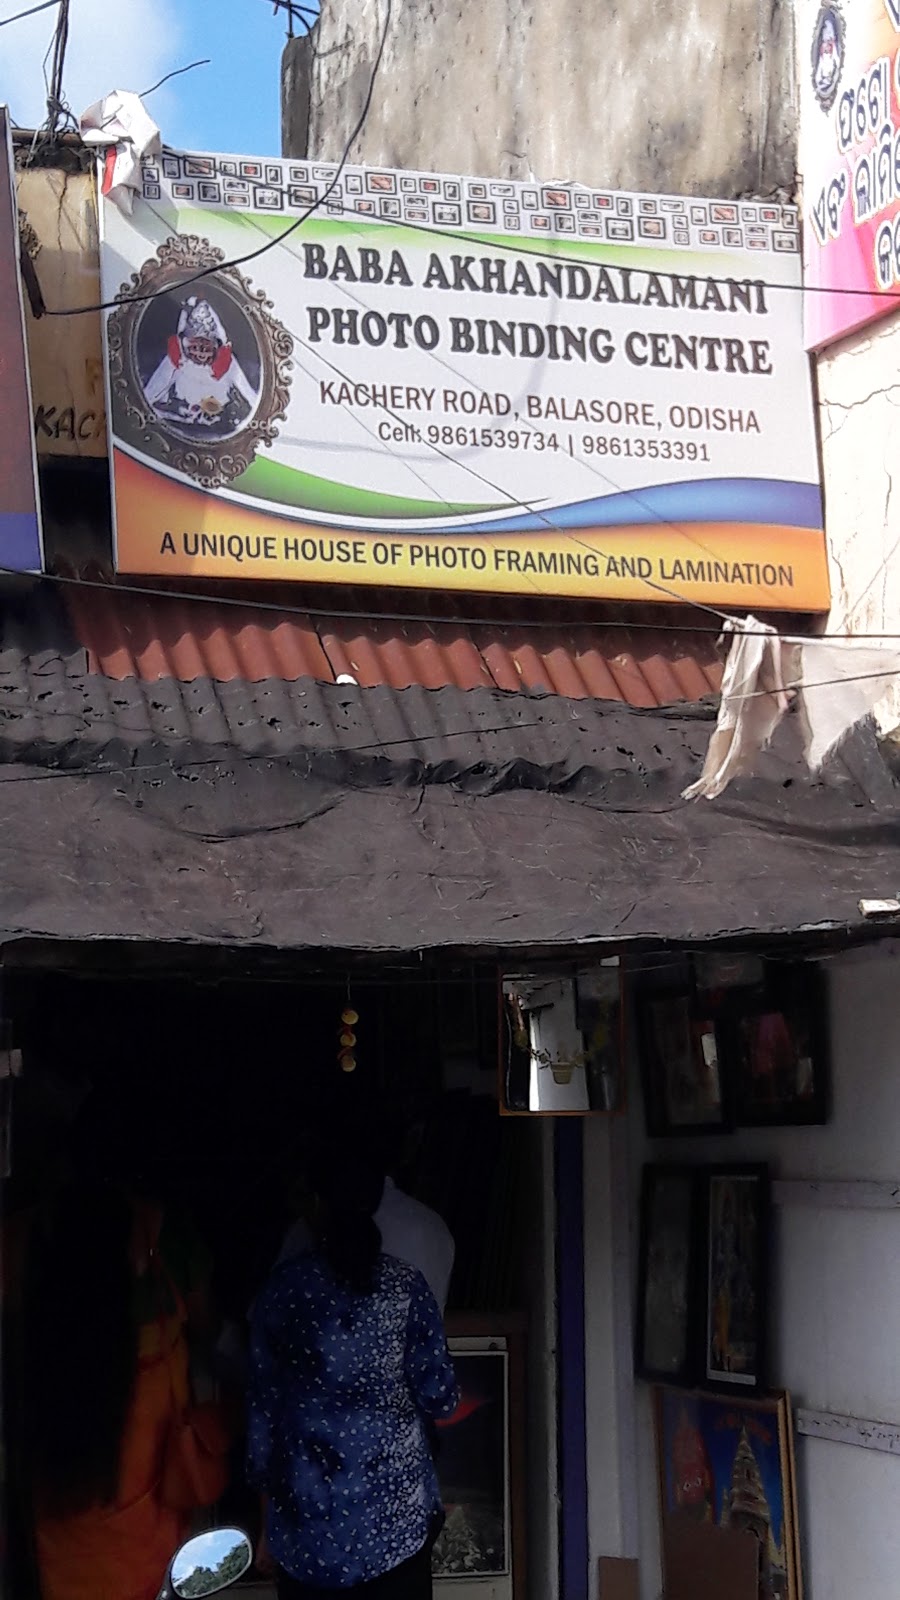 Baba Akhandalamani Photo Binding Centre